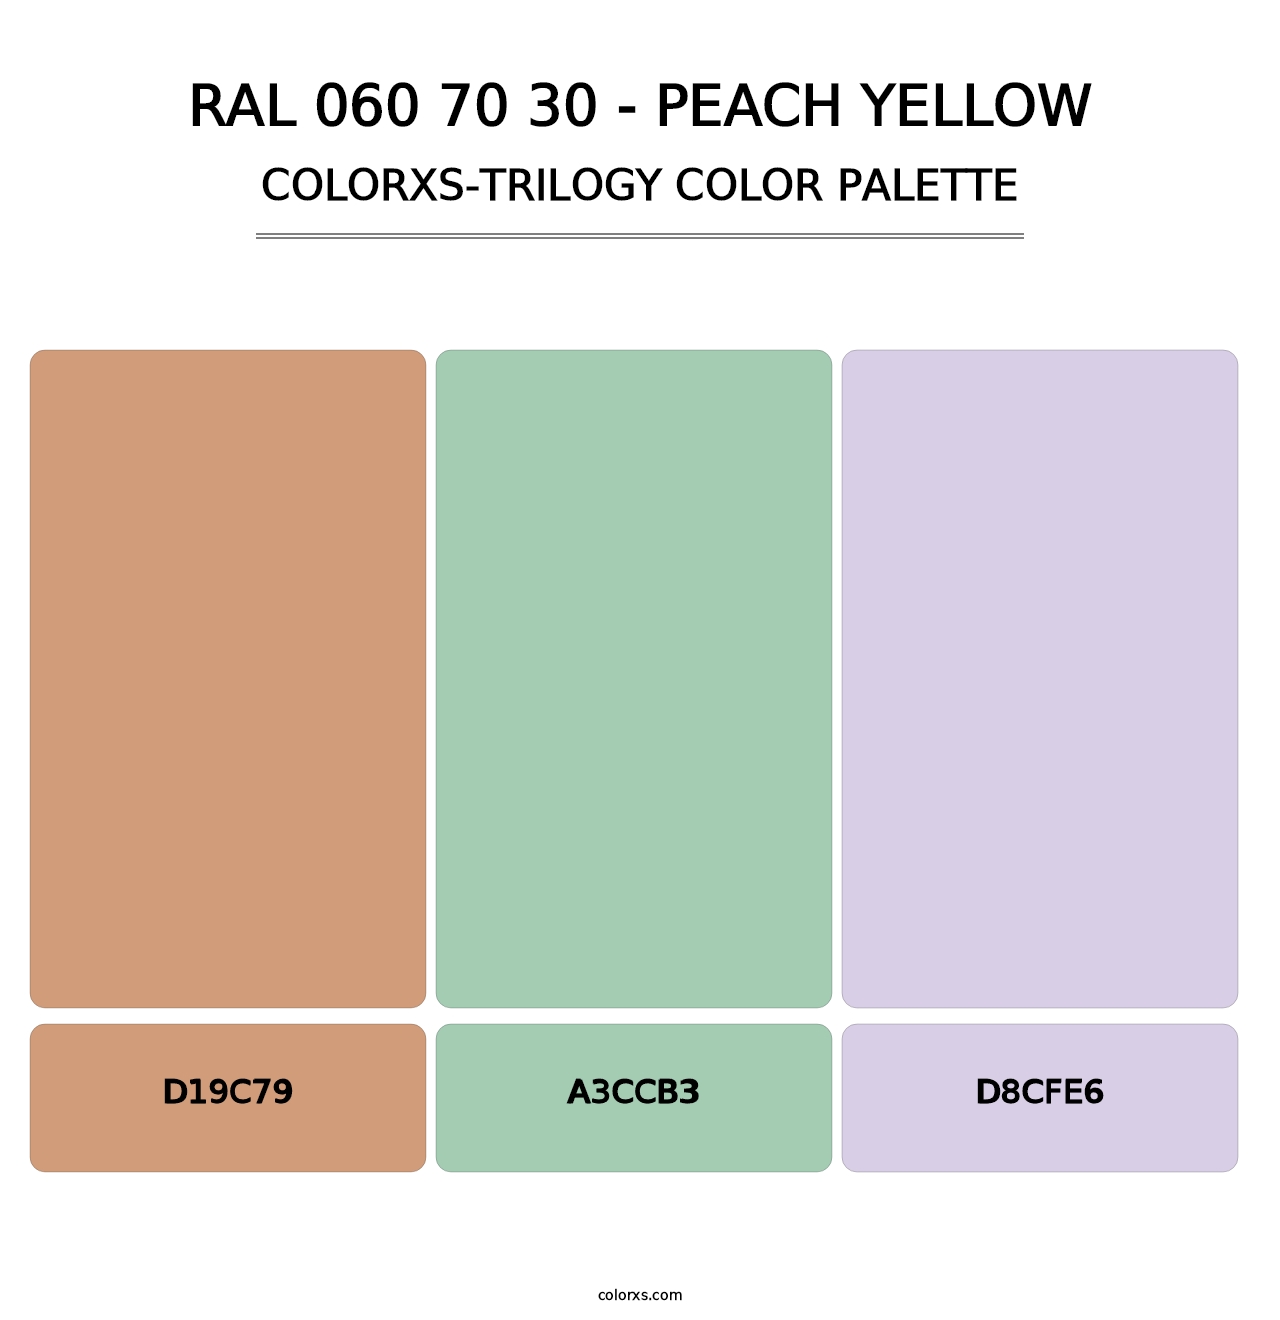 RAL 060 70 30 - Peach Yellow - Colorxs Trilogy Palette